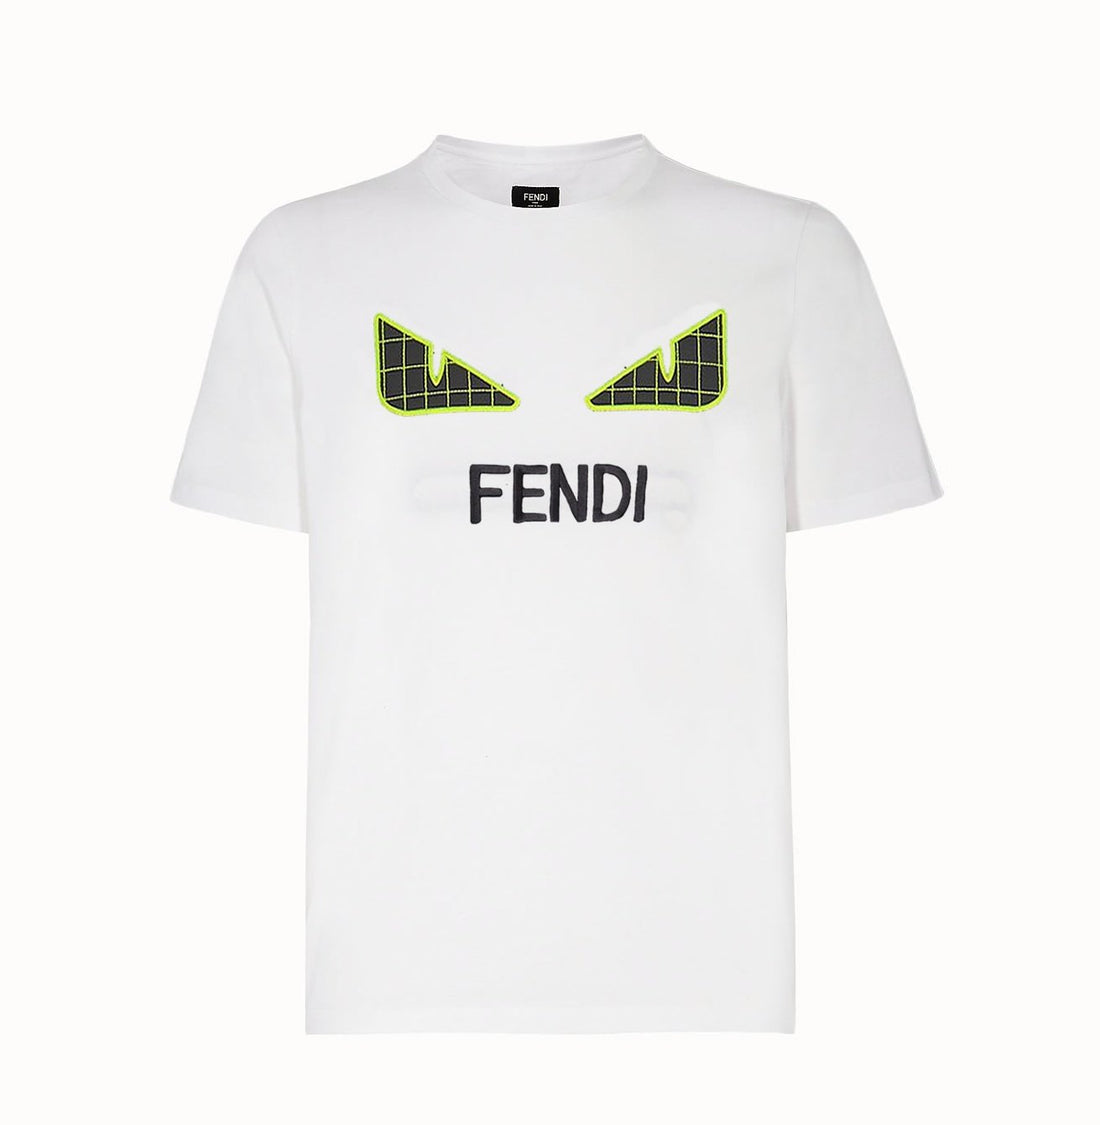 FENDI - T SHIRT